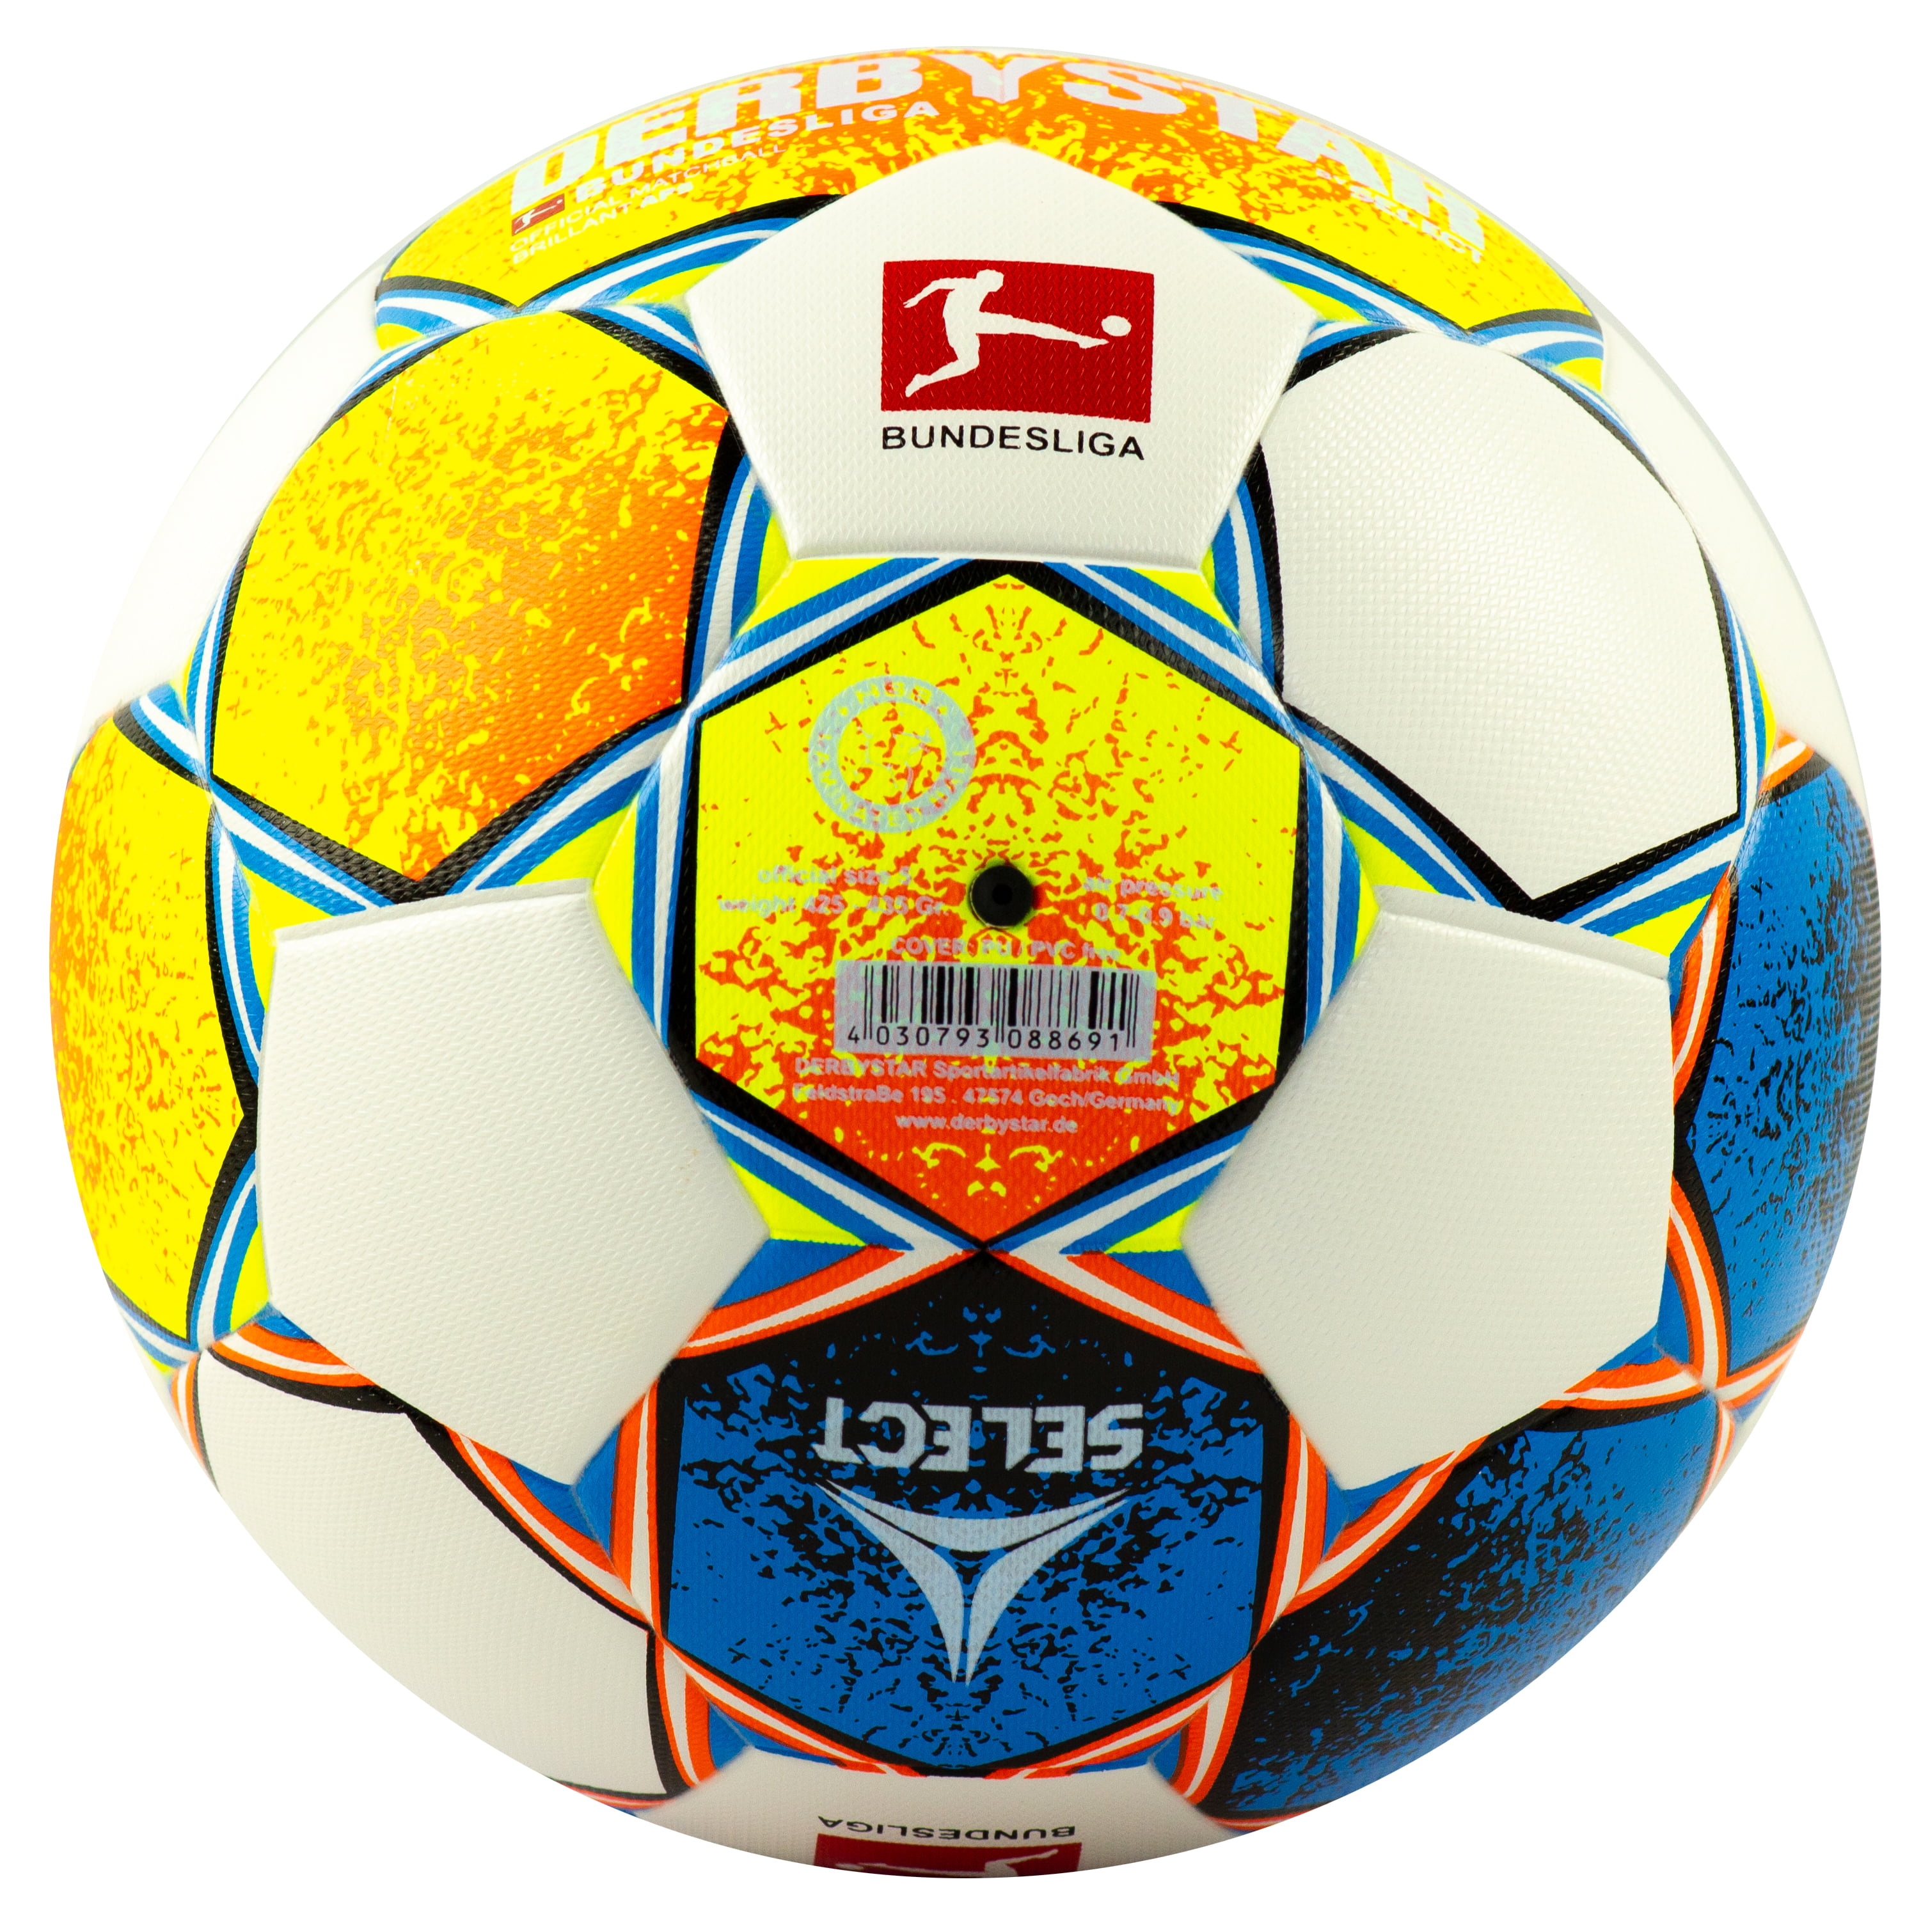 Футбольный мяч «DERBYSTAR FB Bundesliga Brillant APS v21» размер 5, 32 панели, F33951 / Микс